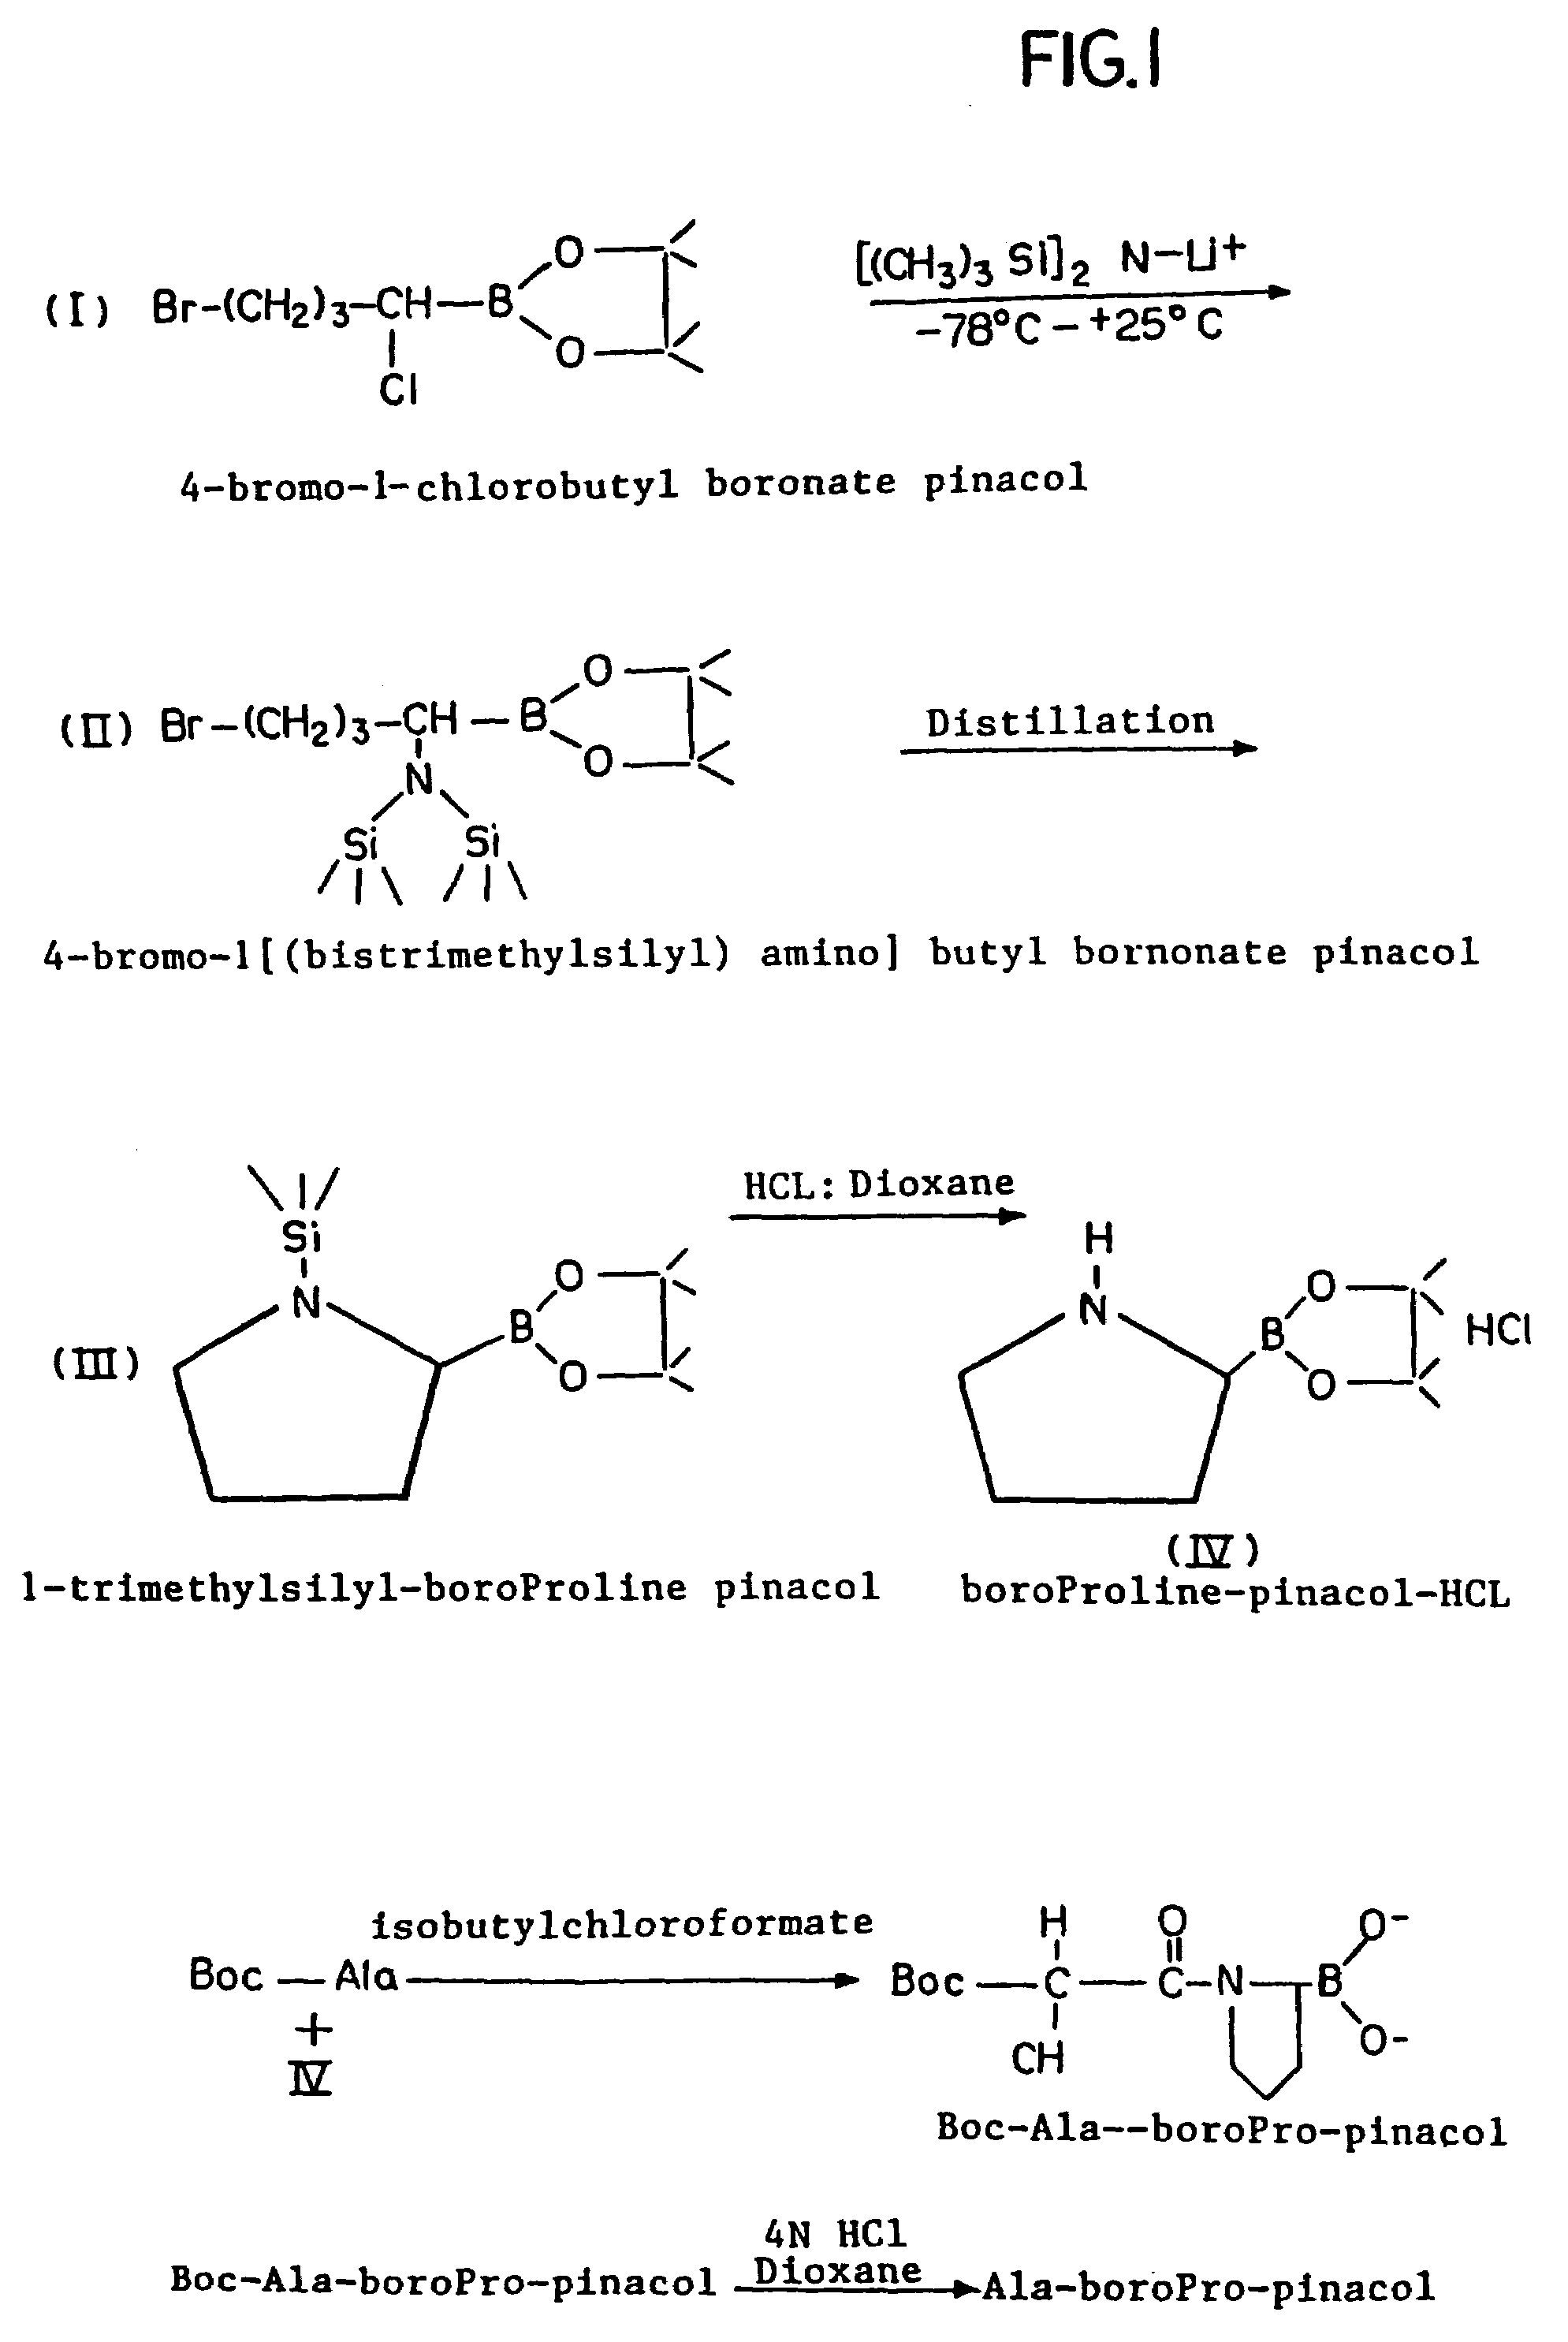 Inhibitors of dipeptidyl-aminopeptidase type IV